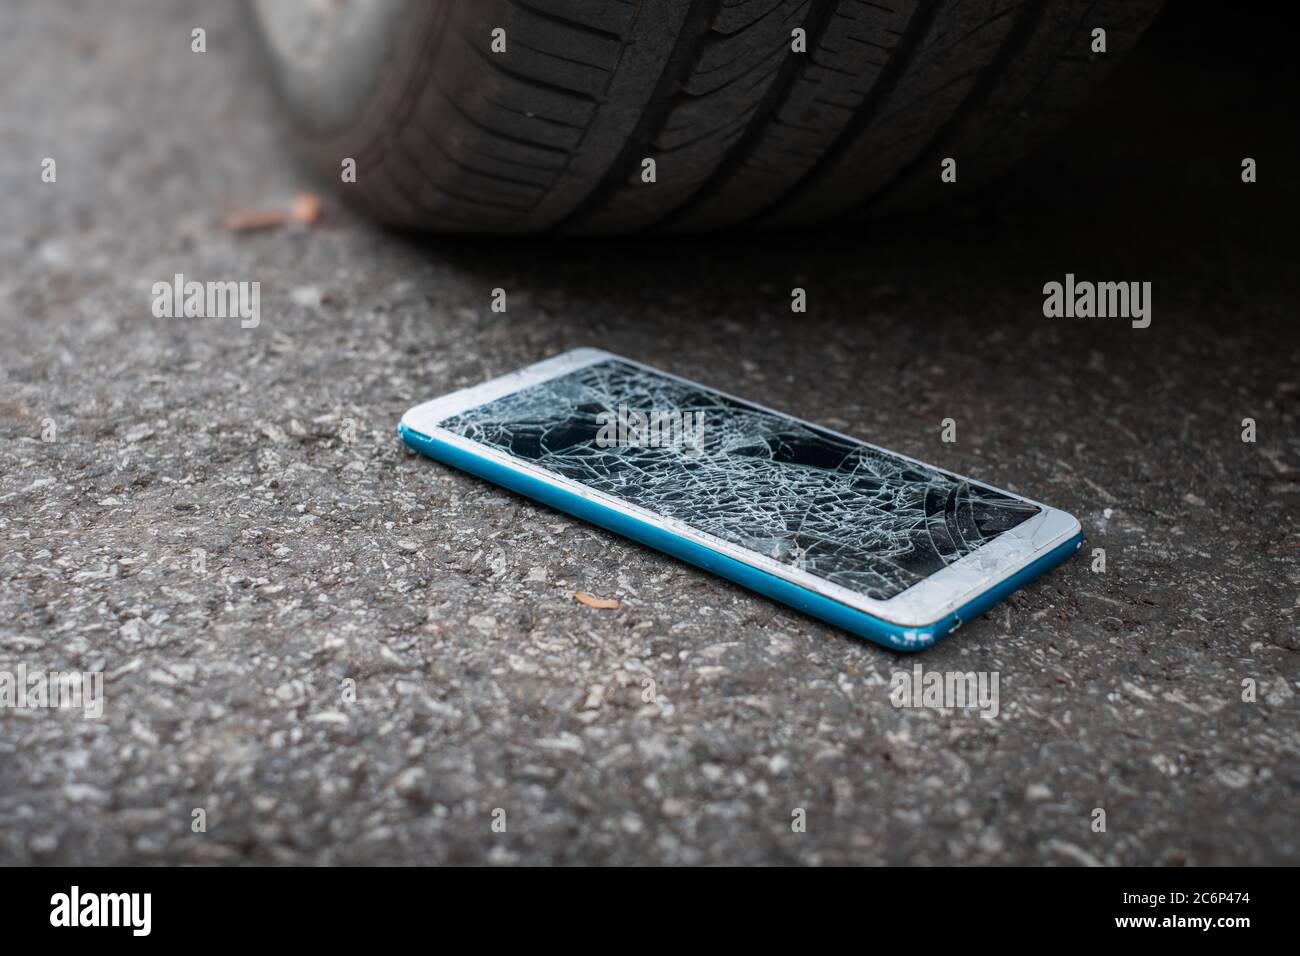 Smartphone-Bildschirm ist platt auf der Straße von Bewegung eines Autoreifen  auf der Vorder-und Rückseite Hintergrund ist verschwommen geknackt  Stockfotografie - Alamy